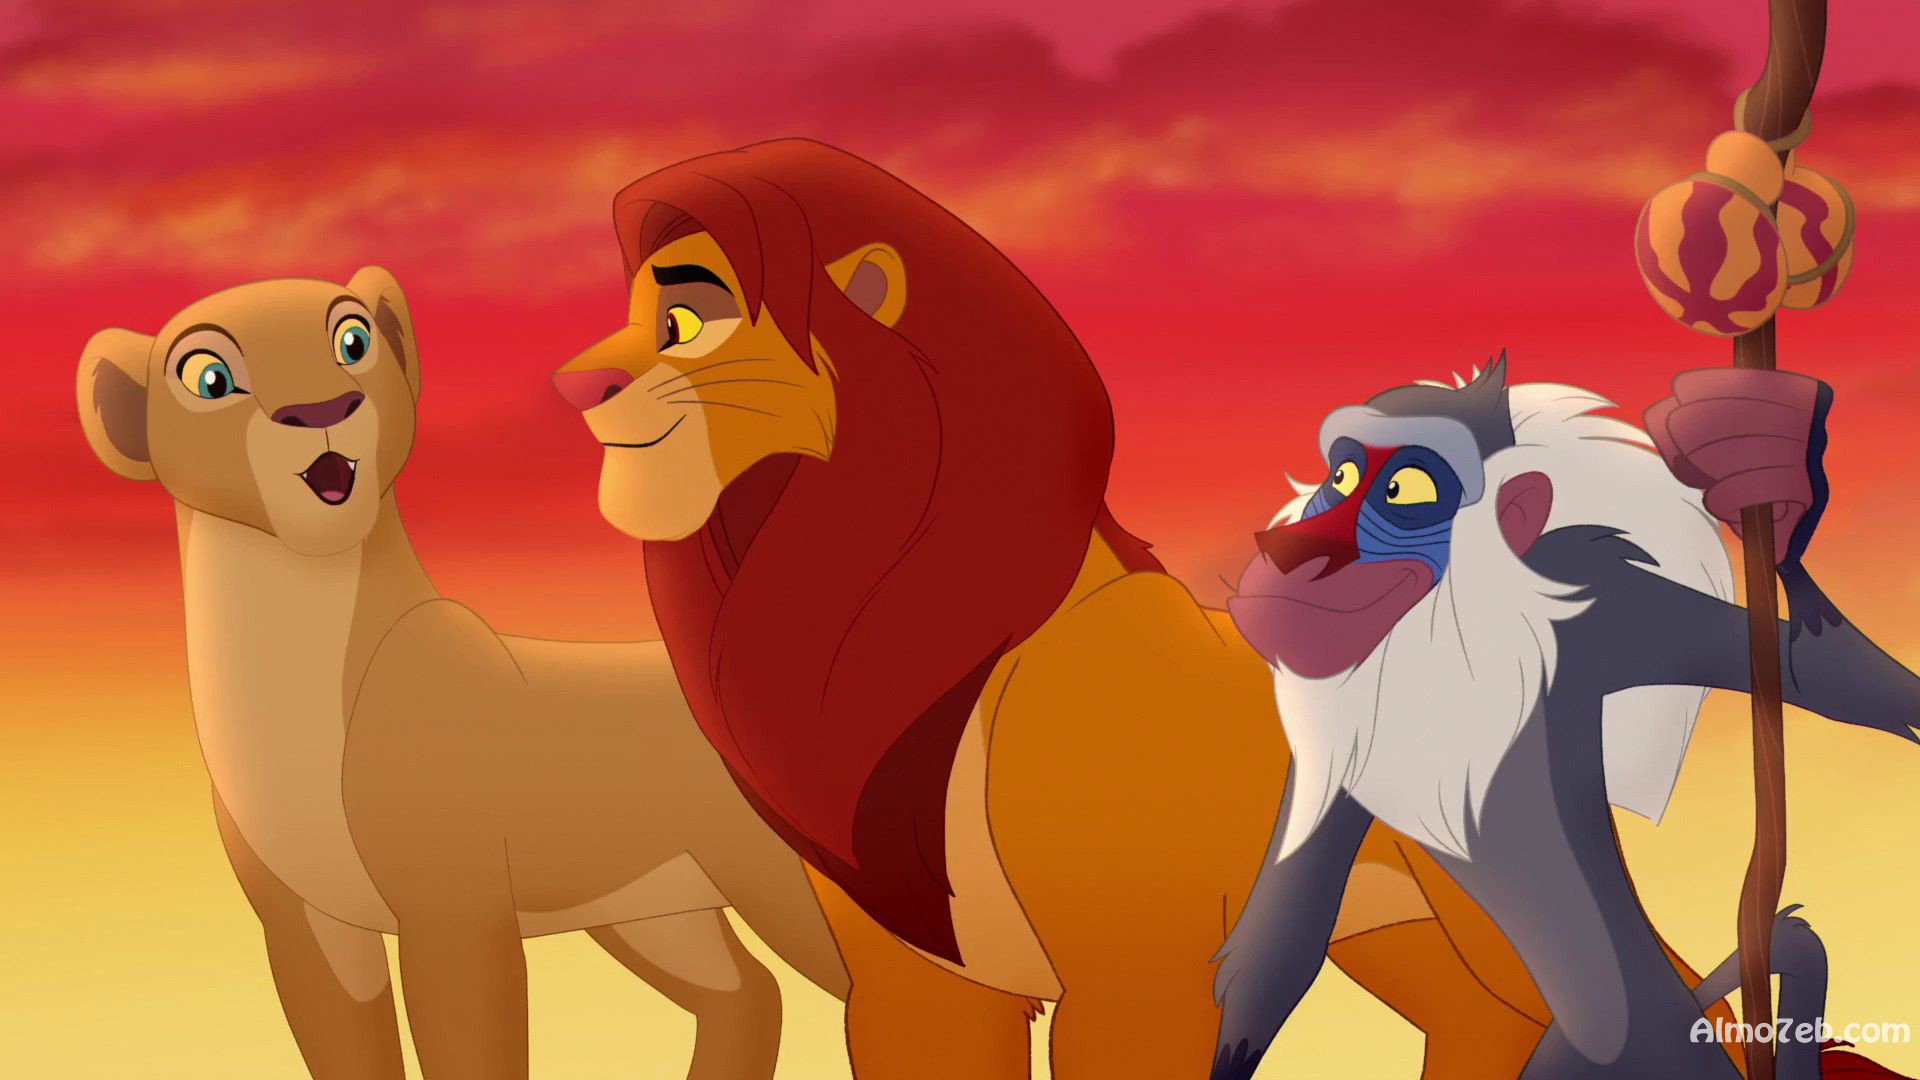 مجموعة صور خلفيات بجودة عالية من فلم الكرتون الملك الاسد: عودة الزئير The Lion Guard Return of the Roar